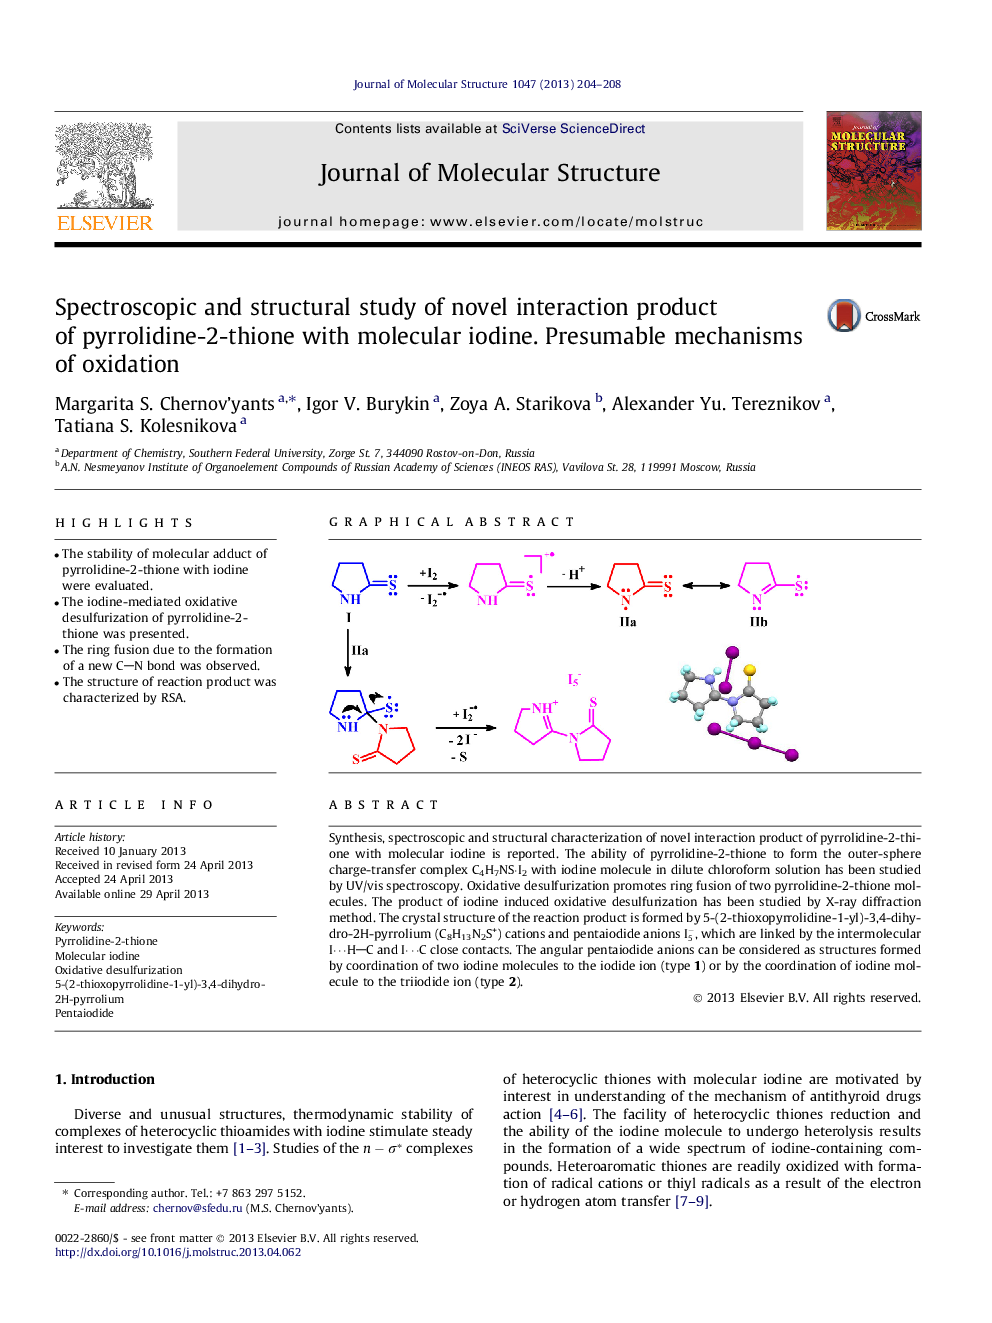 مطالعه طیفی و ساختاری محصول تعامل جدید پیرولیدین-2-تیون با ید مولکولی. مکانیسم های احتمالی اکسیداسیون 